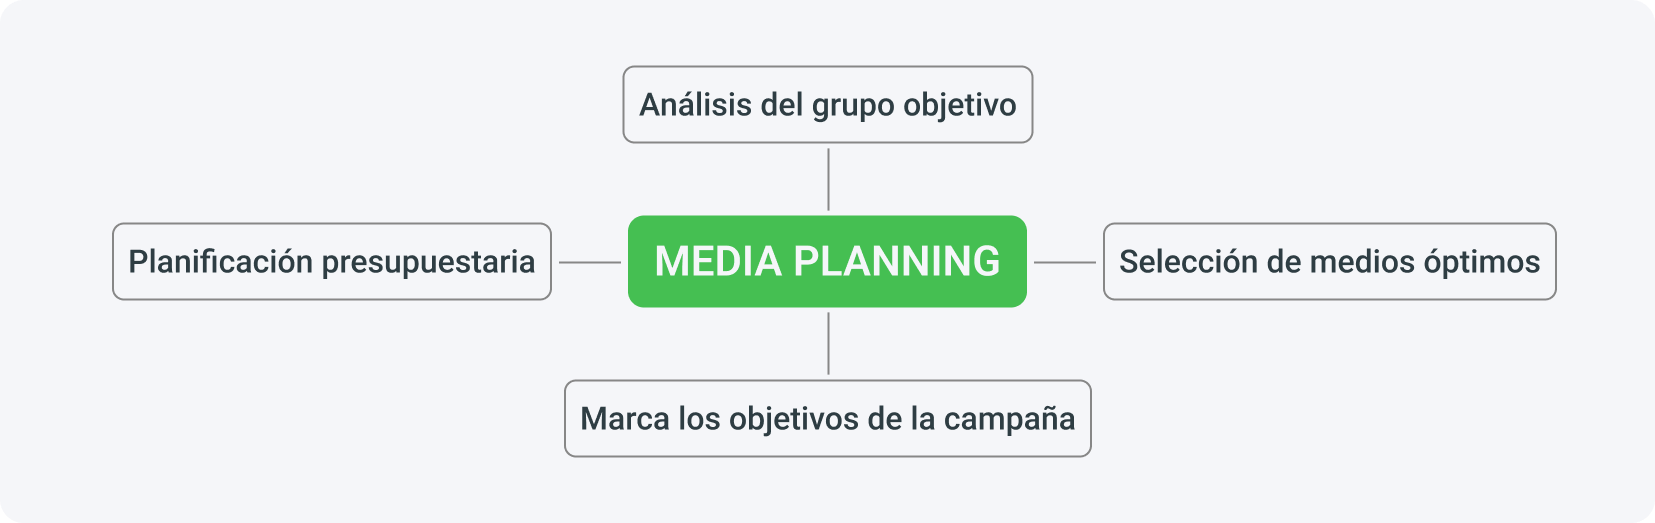 El media planning es principalmente un análisis del grupo objetivo, definiendo los objetivos de la campaña, eligiendo medios óptimos y planificación presupuestaria.